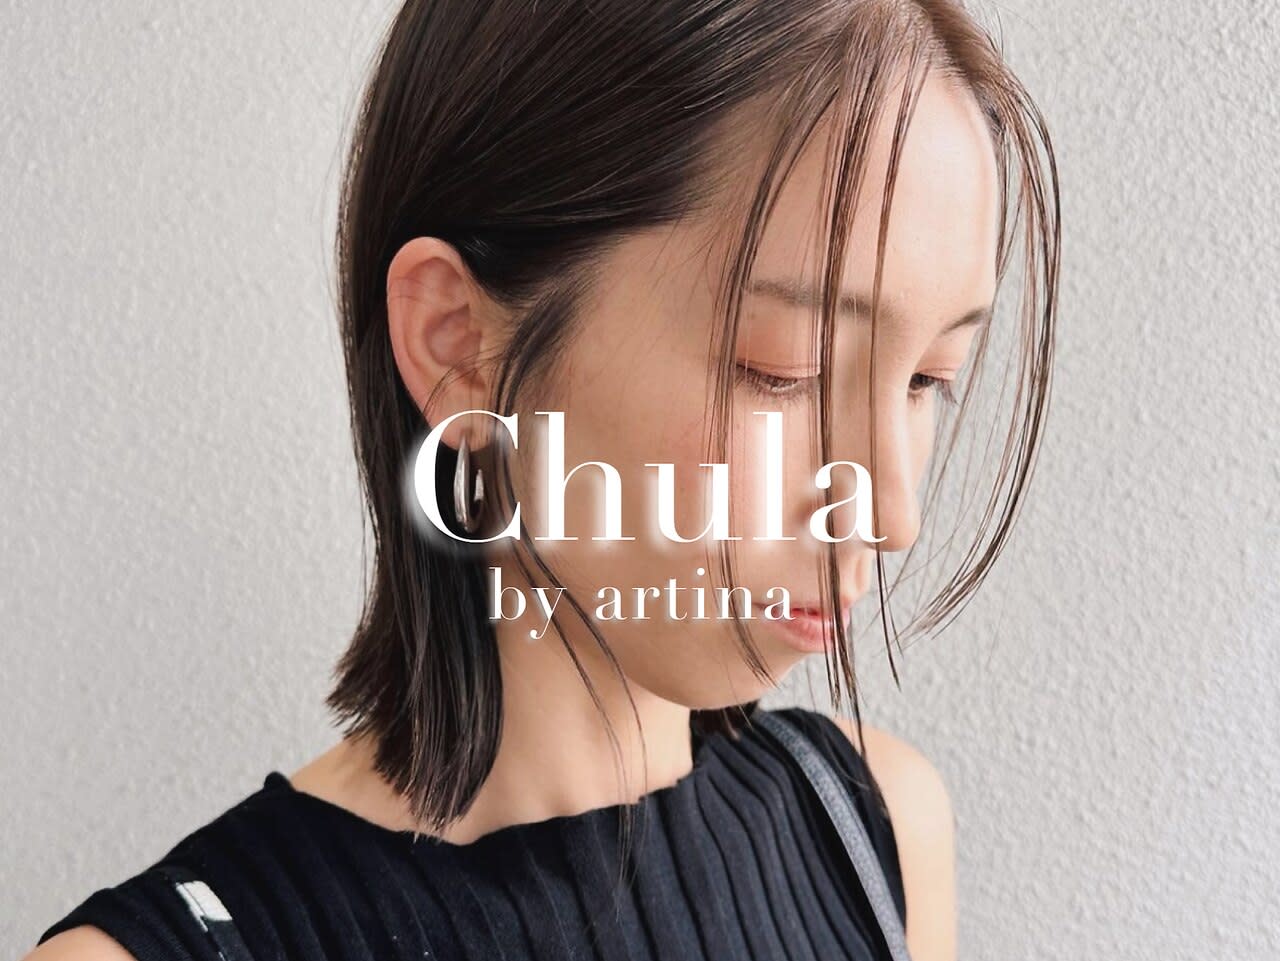 Chula by artina 海老名2号店のアイキャッチ画像